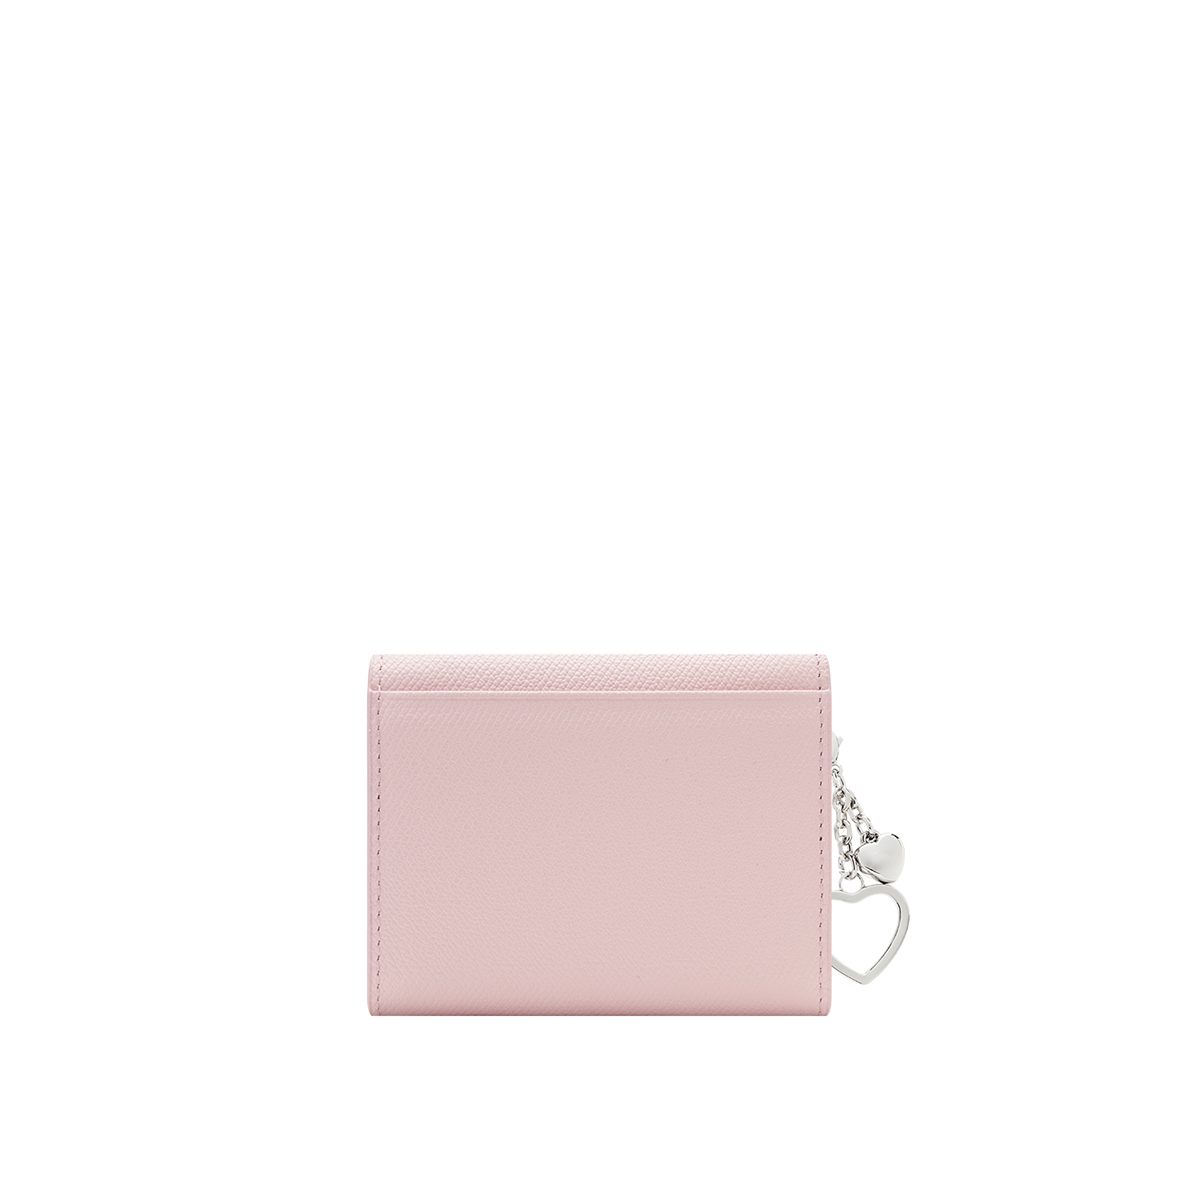 [공식몰단독] 루이까또즈 LALA(라라) 여성반지갑 핑크 SS2SD71PI